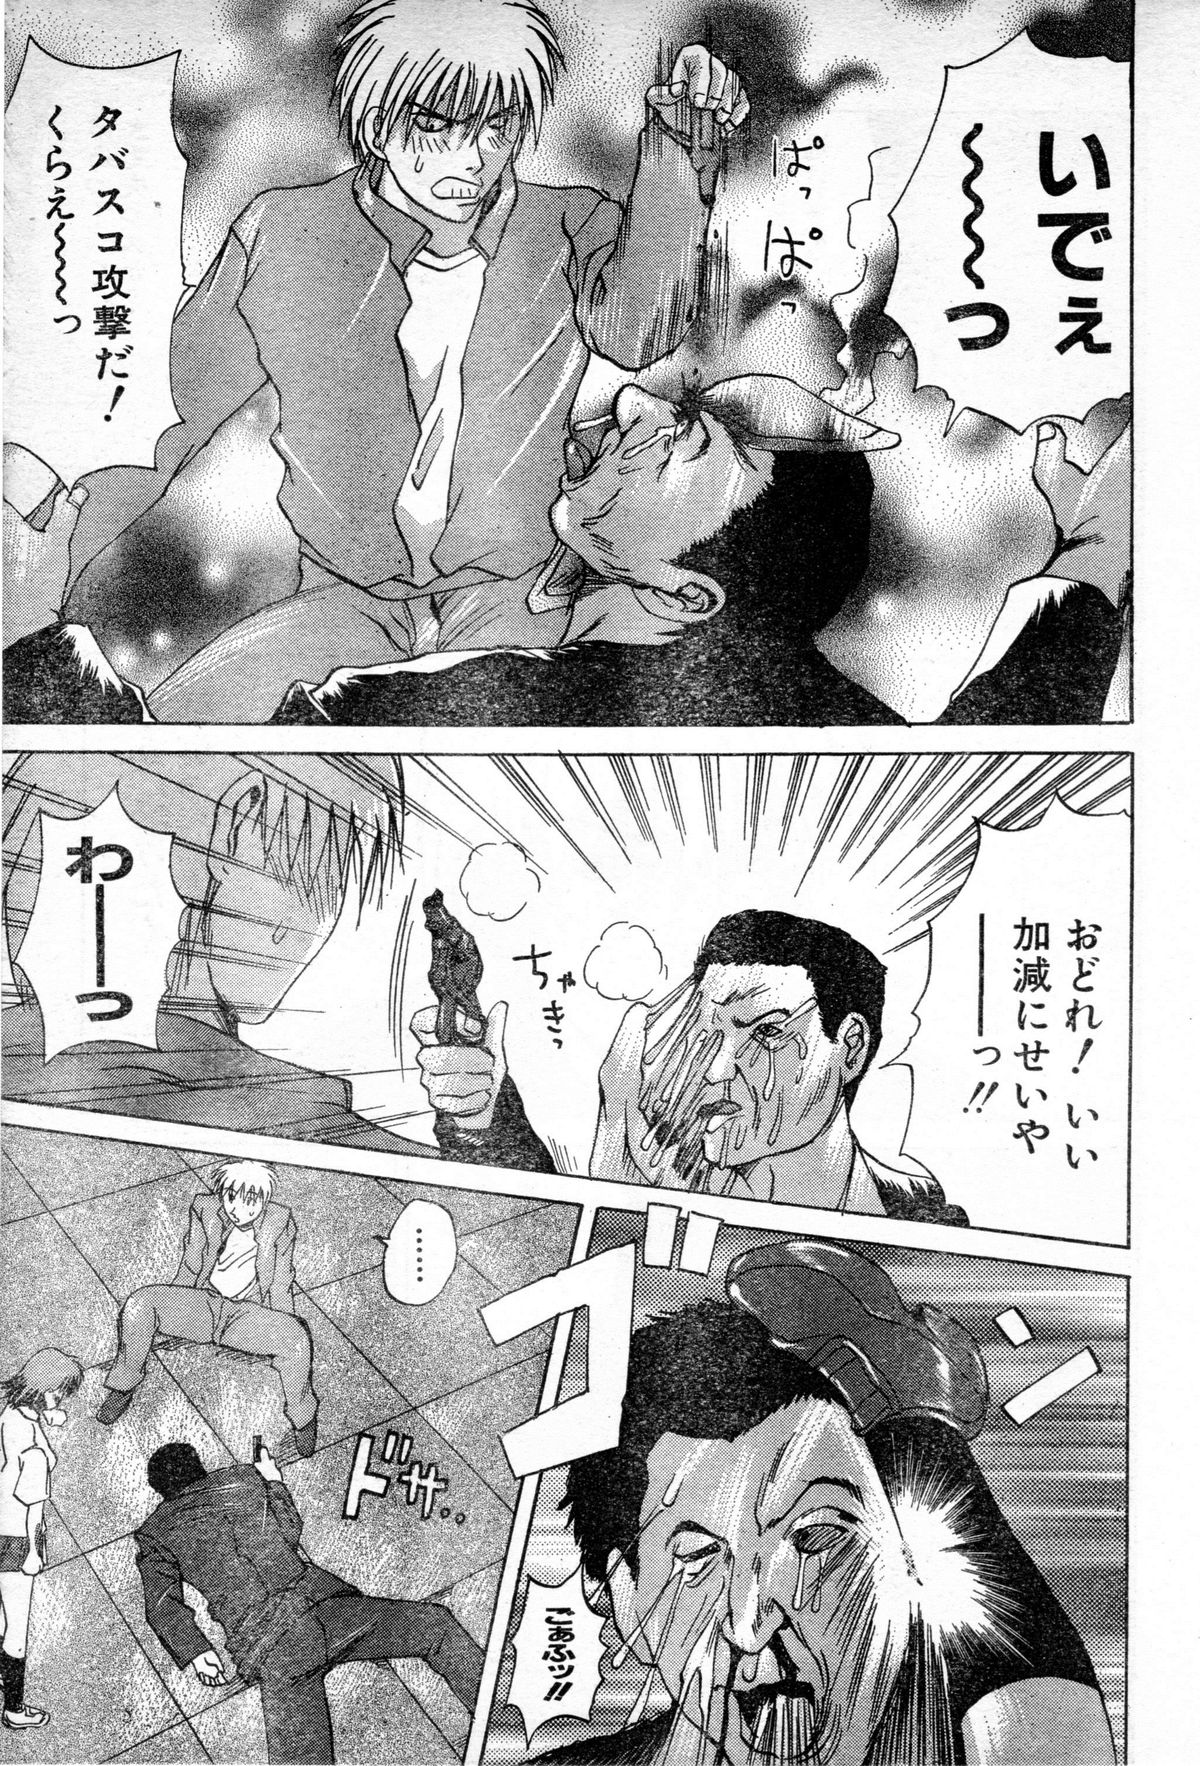 [Gekka Saeki] Gun Dancing page 17 full